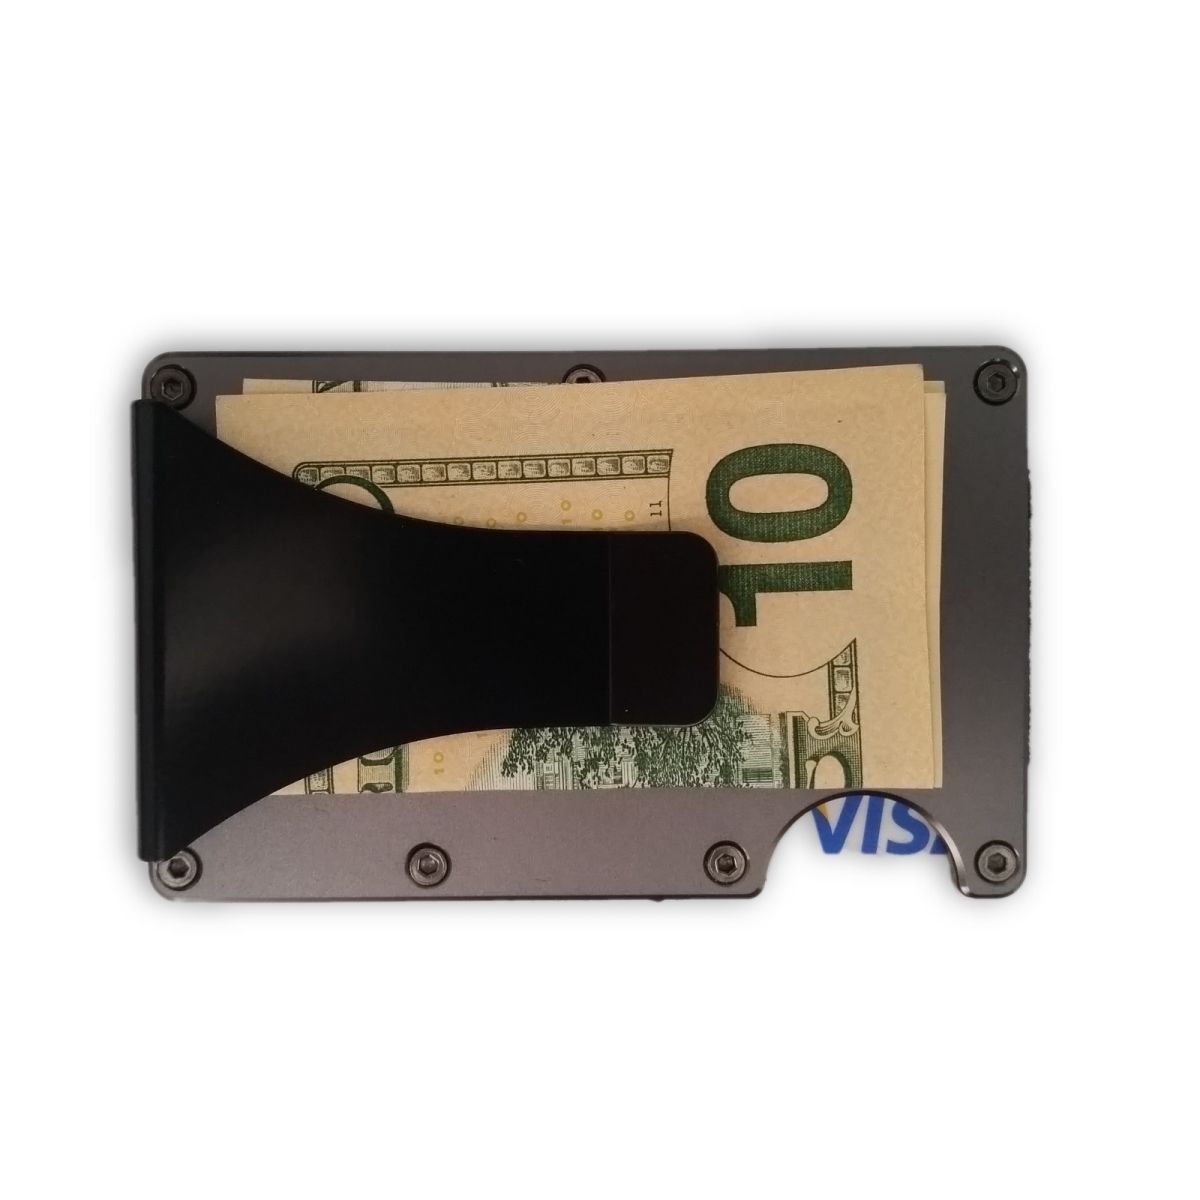 solo Minimalist Aluminium Wallet with Money Clip - Dark Grey